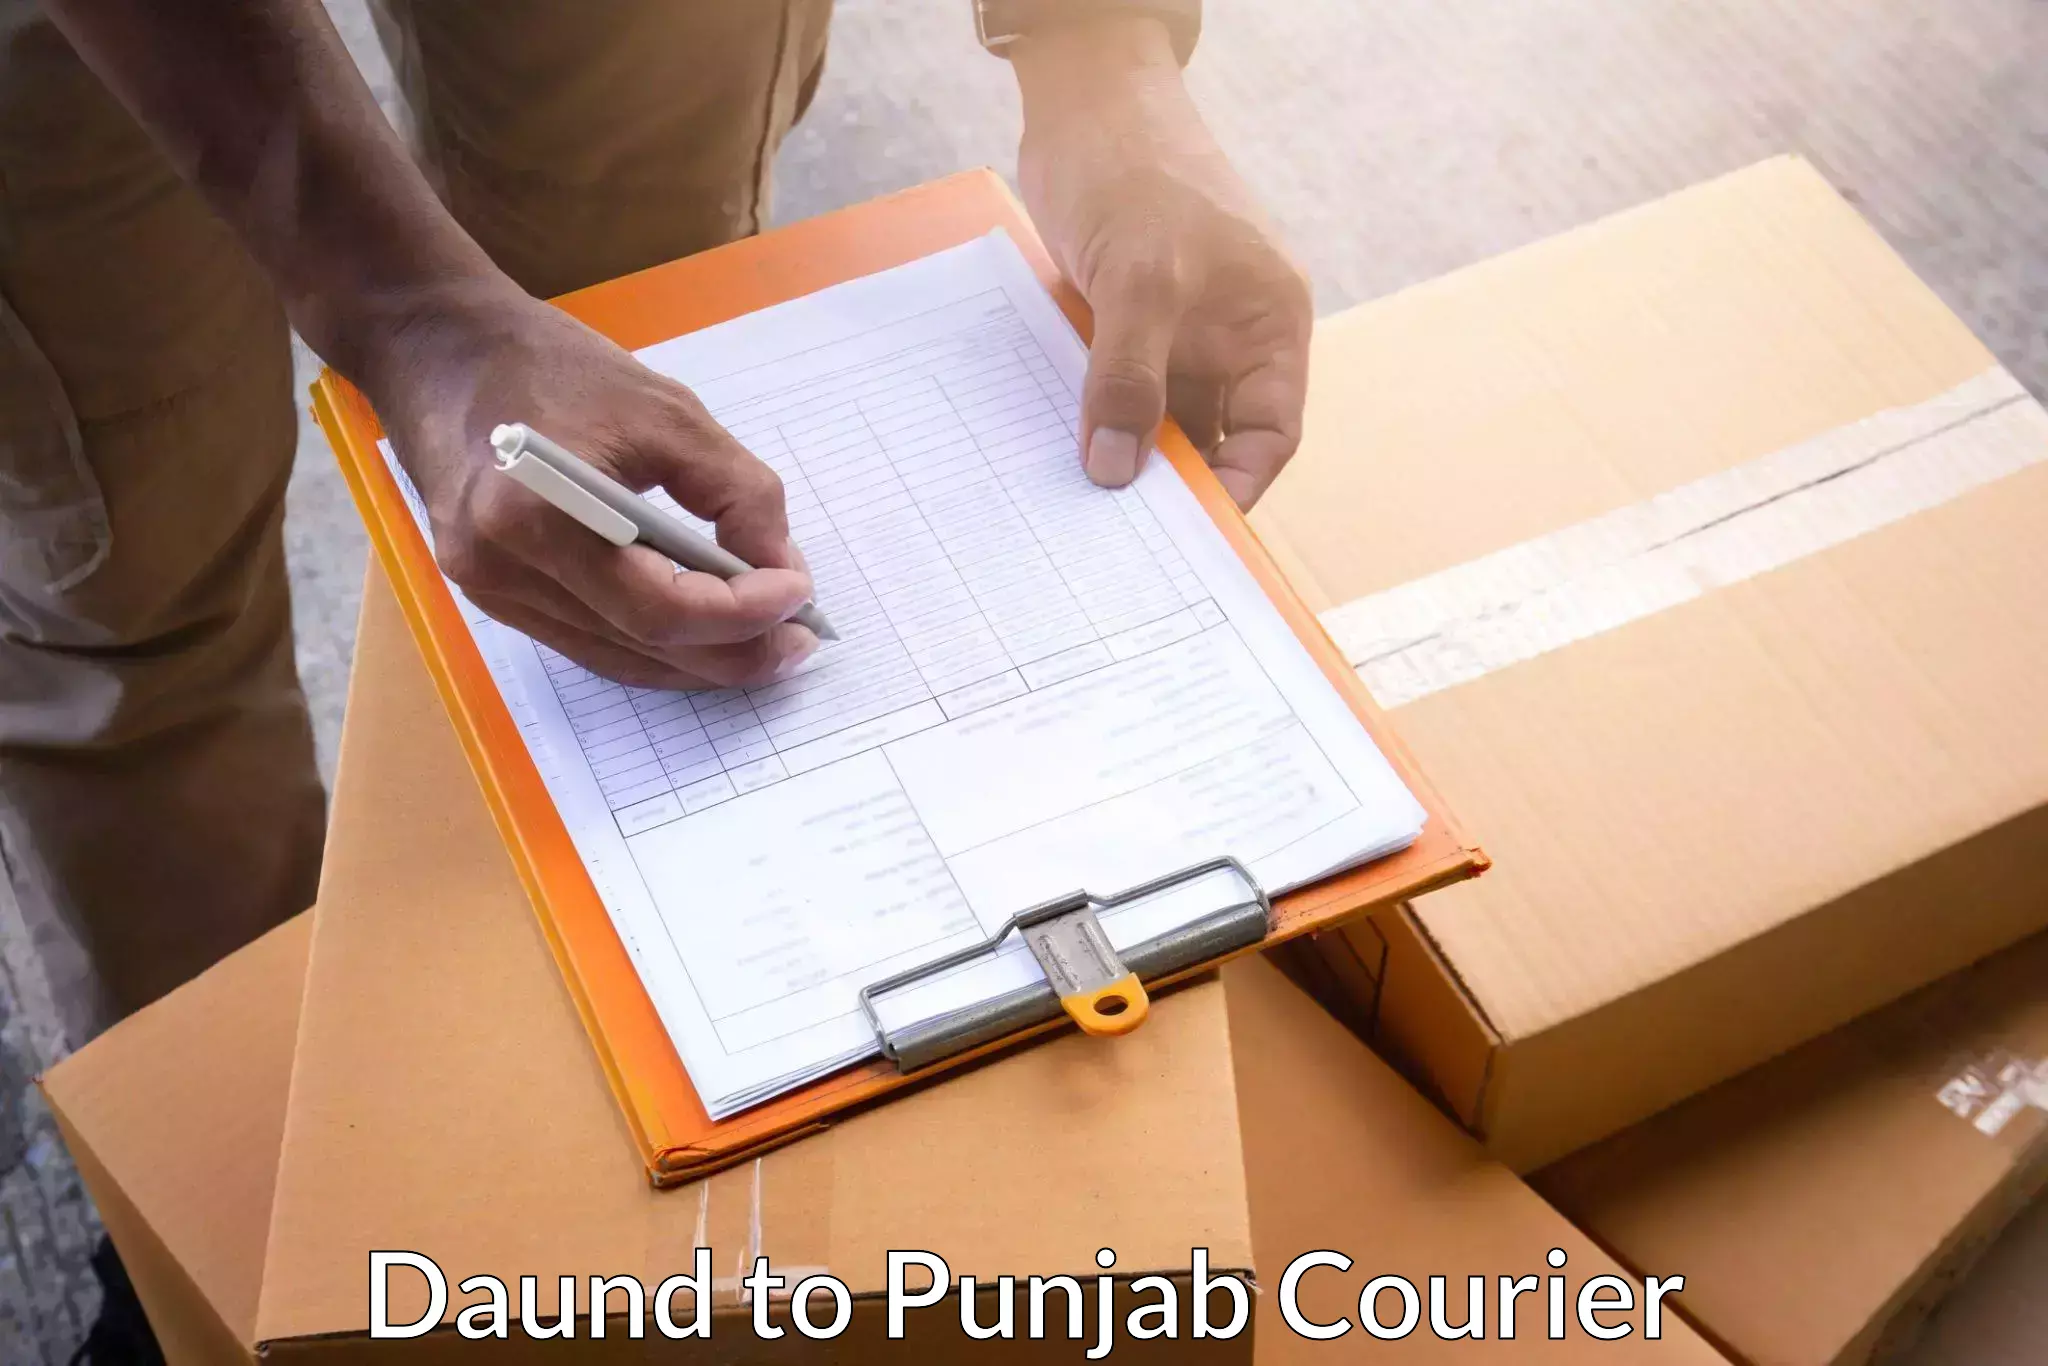 Professional courier handling Daund to Garhshankar